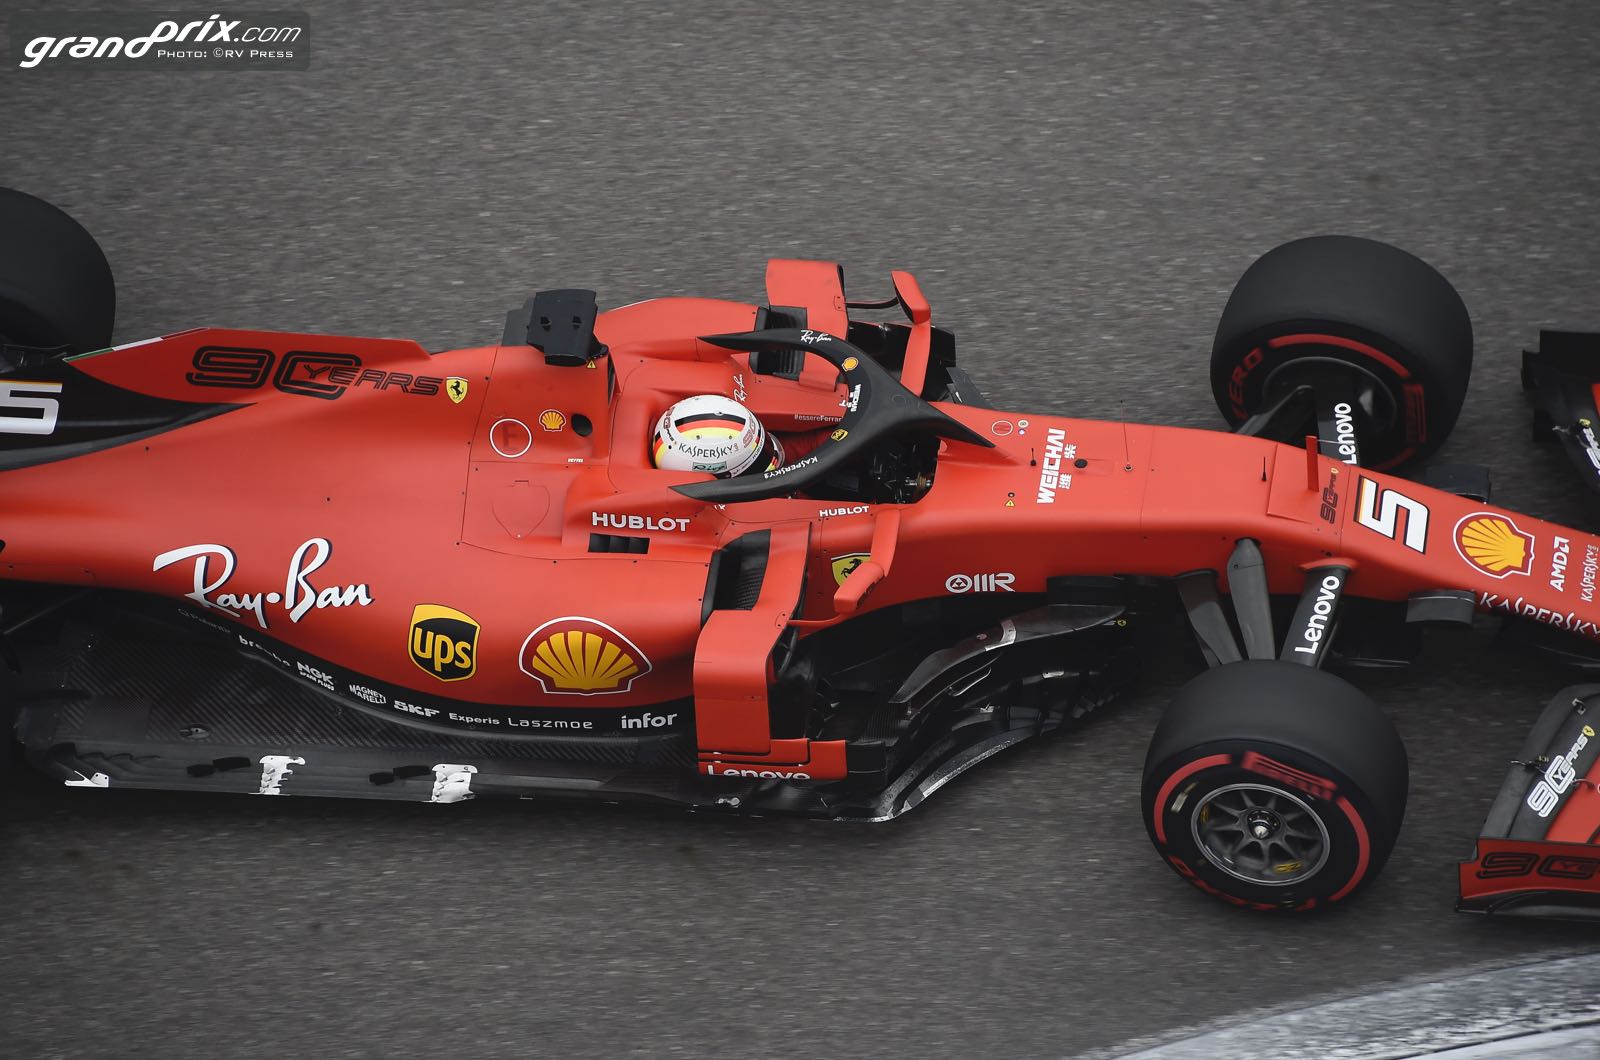 Ferrari Vettelu ponudio dvogodišnji ugovor